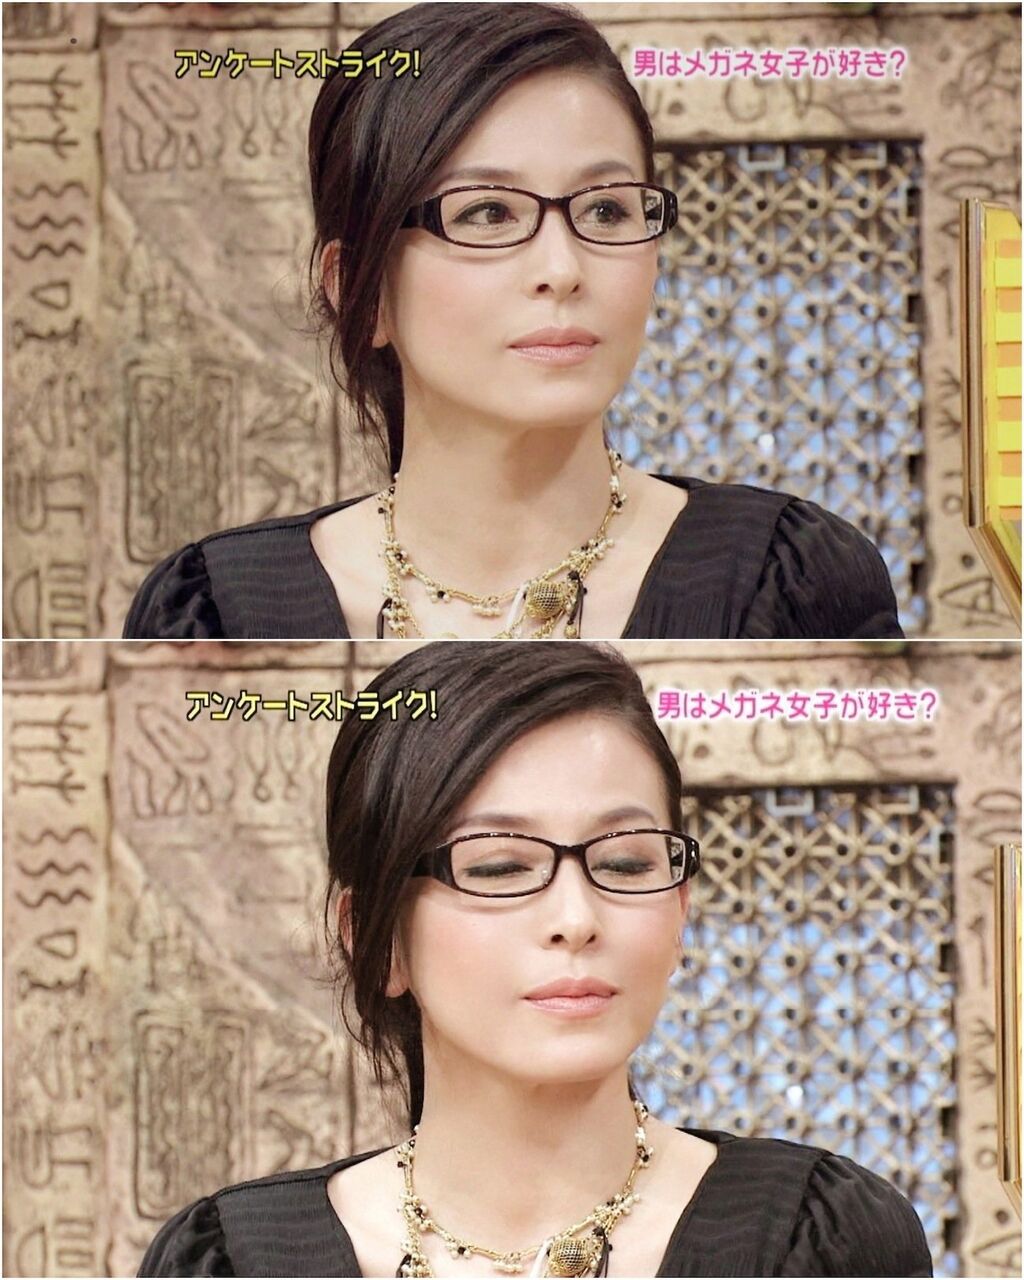 超画像 眼鏡かけた杉本彩がベヨネッタにしか見えないwwww Jのログ おんjまとめブログ